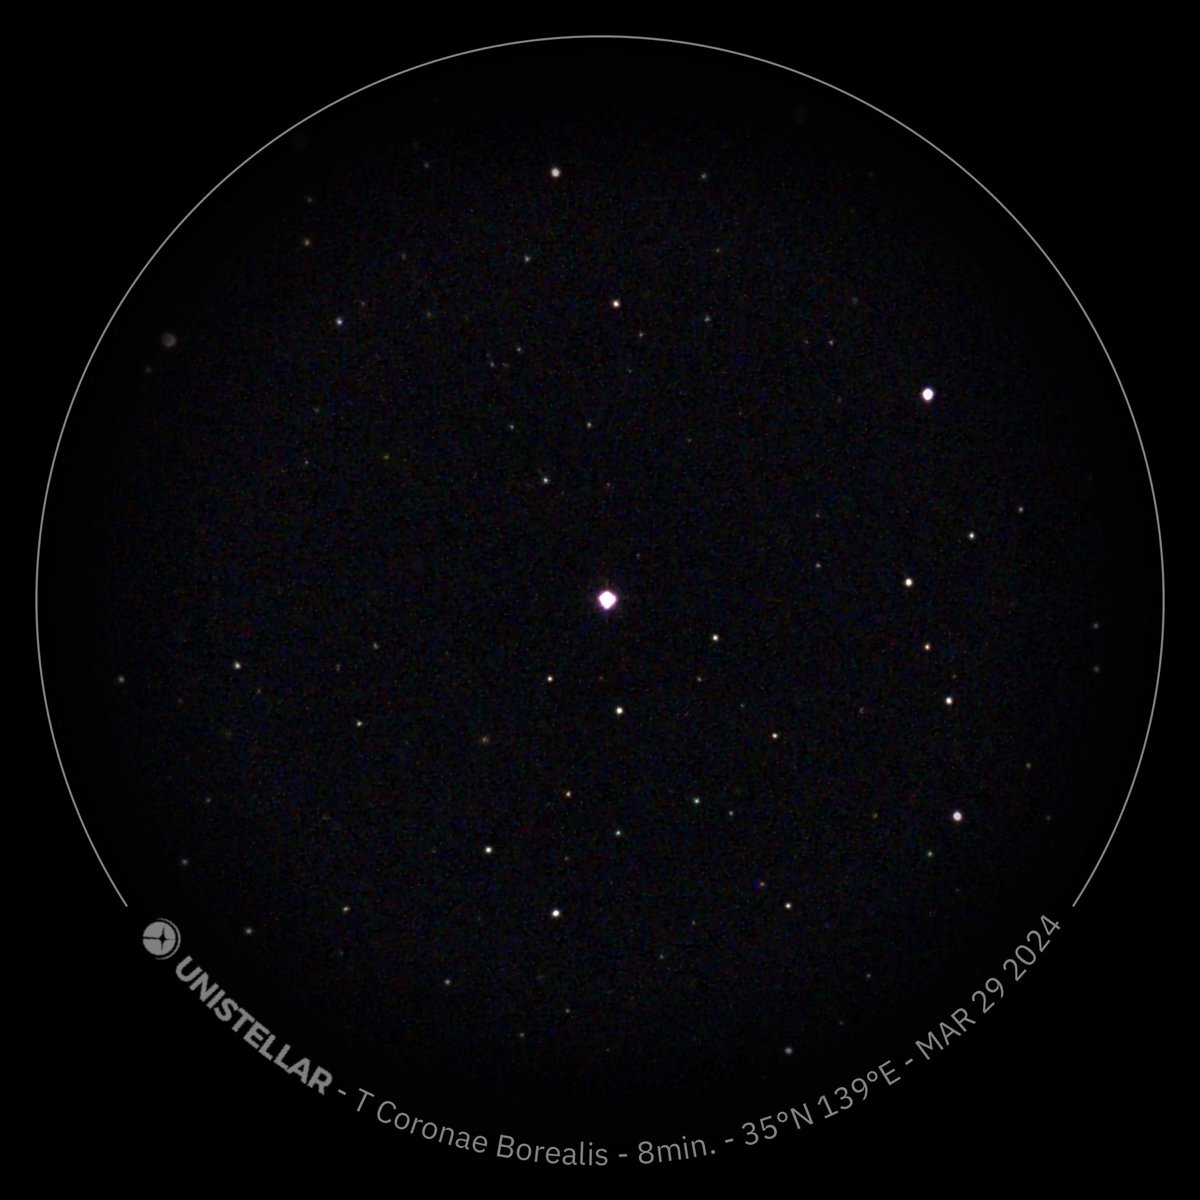 Blaze star / T CrB
March 29 23:05 JST
eVscope